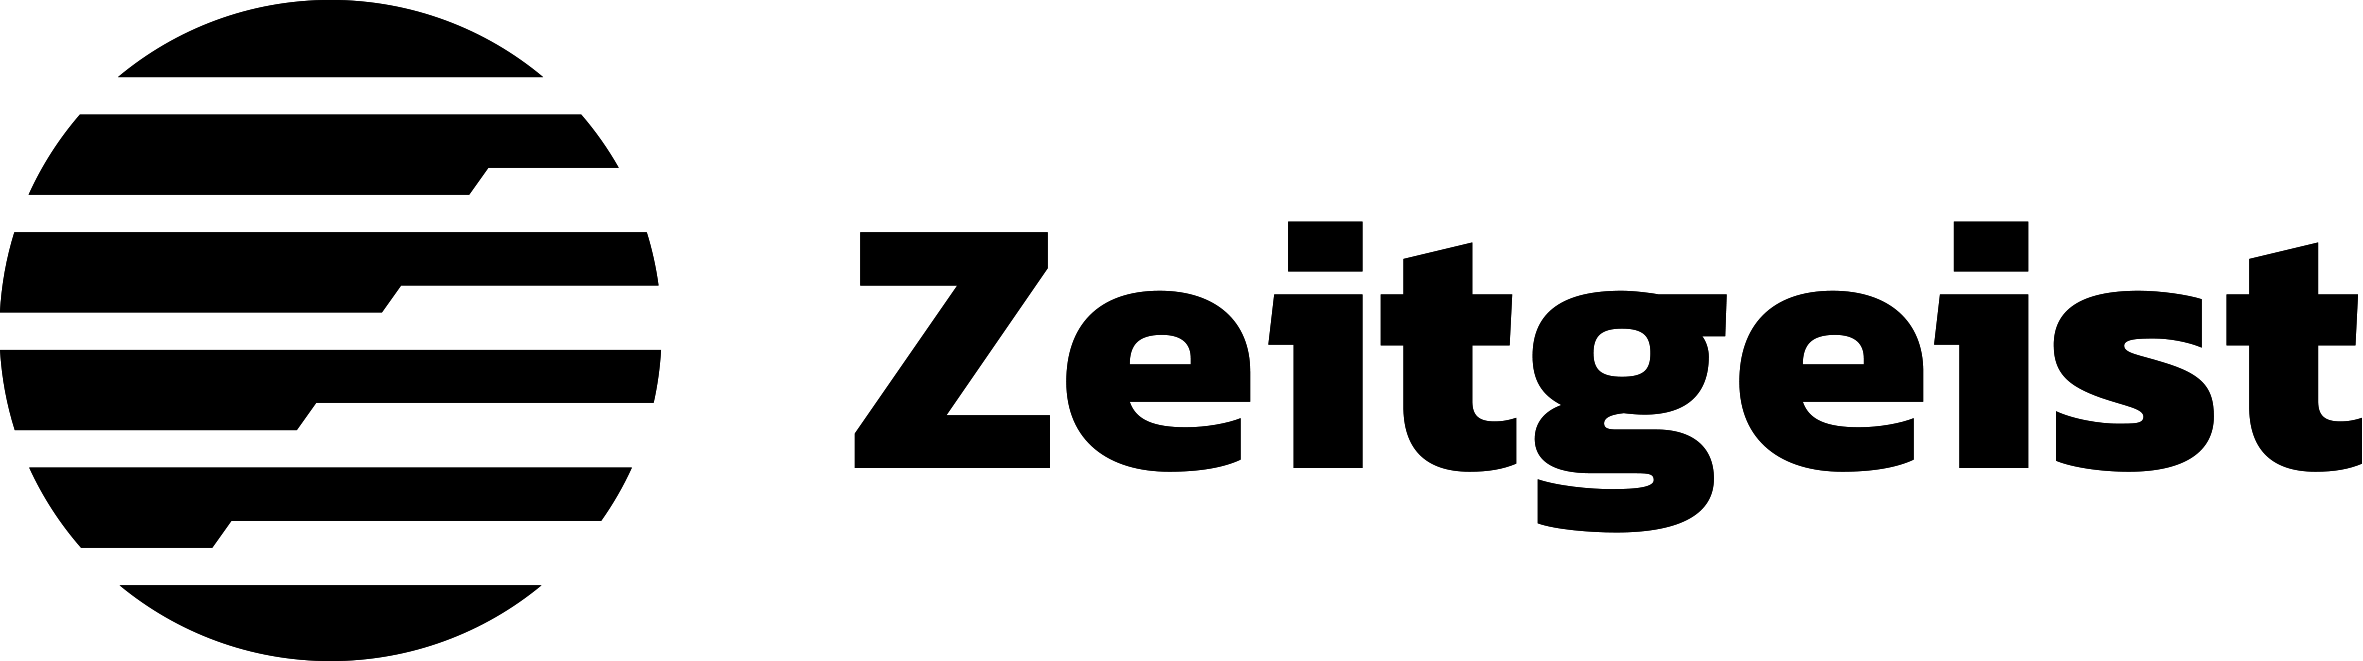 Zeitgeist_Logo/